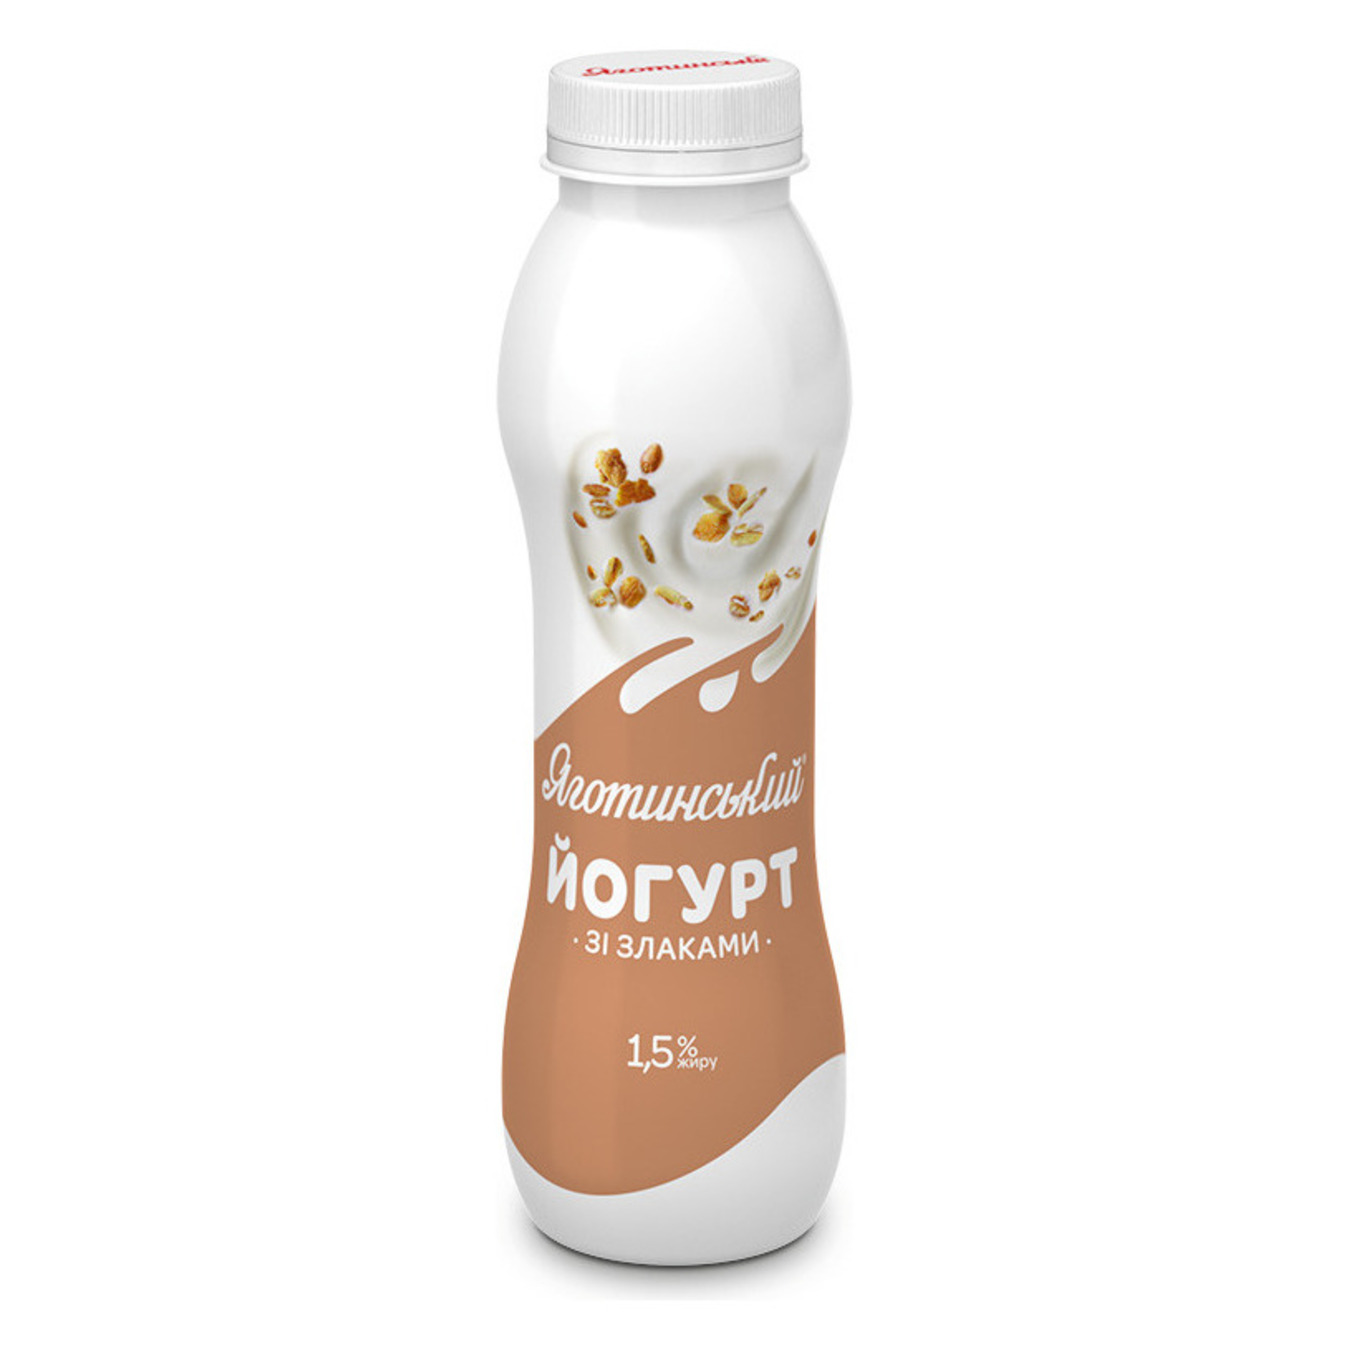 Yogurt Yagotynske 1.5% cereals 270g